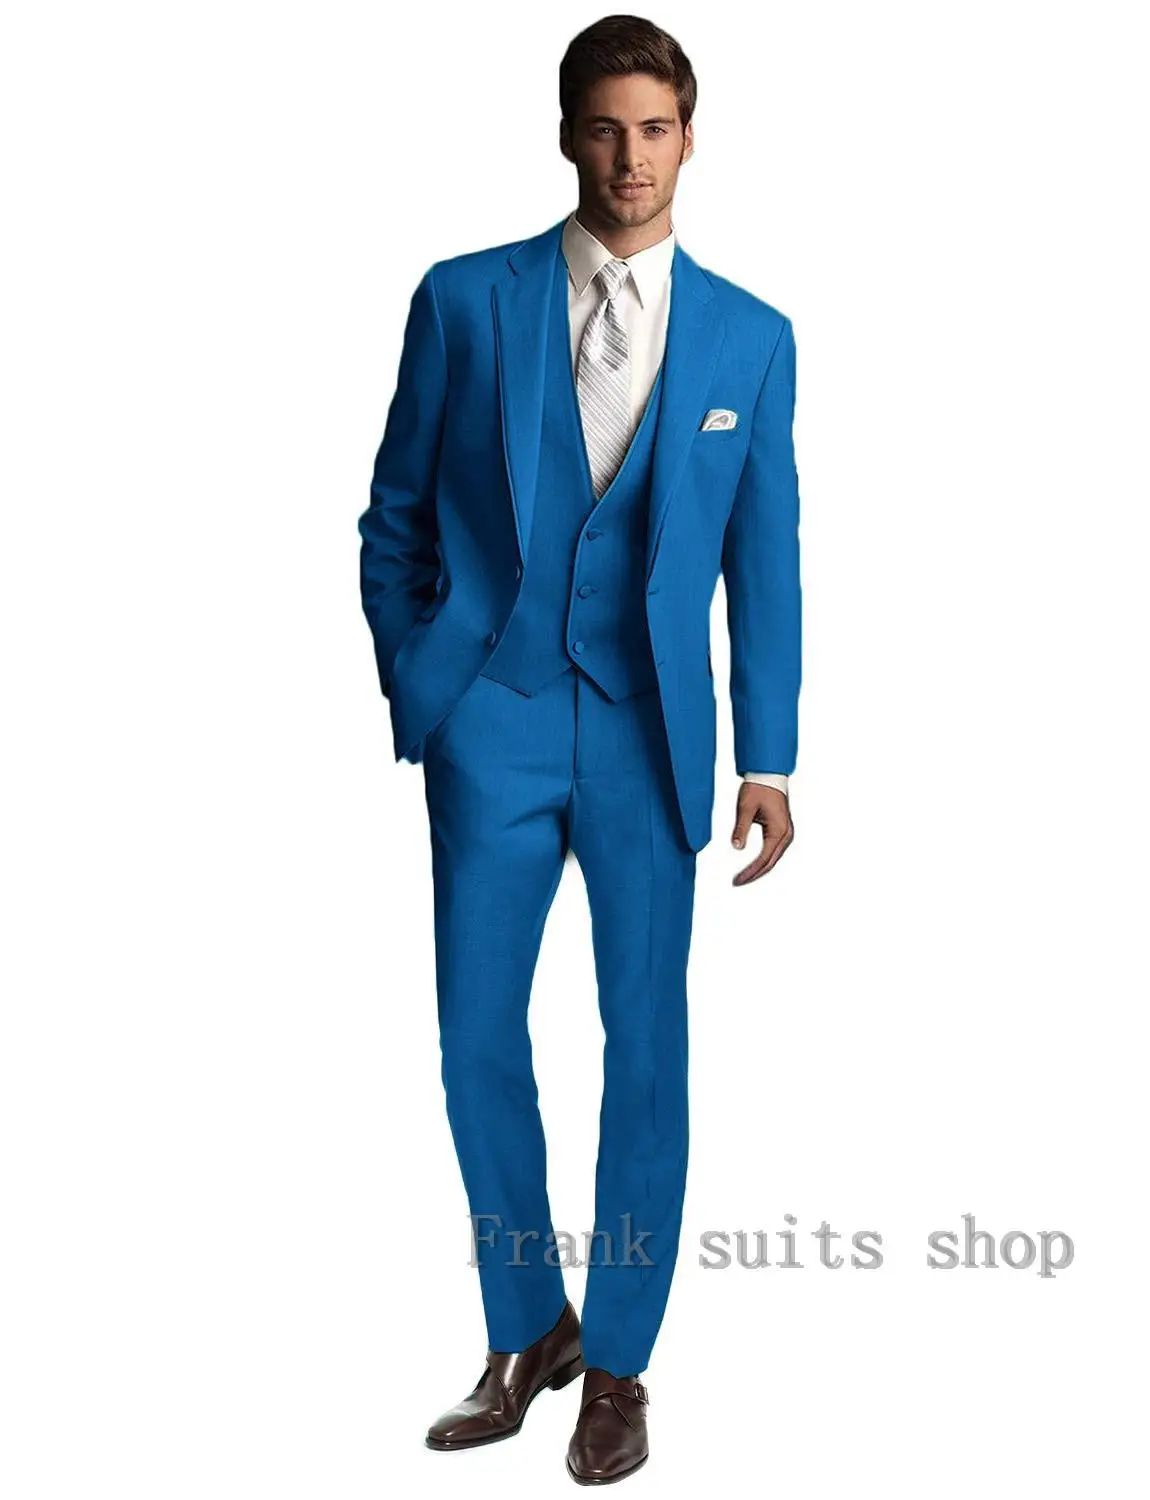 Брендовый мужской костюм, свадебные костюмы для мужчин, стиль, воротник, 3 штуки, приталенный, Голубое озеро, мужской костюм, синий и зеленый смокинг